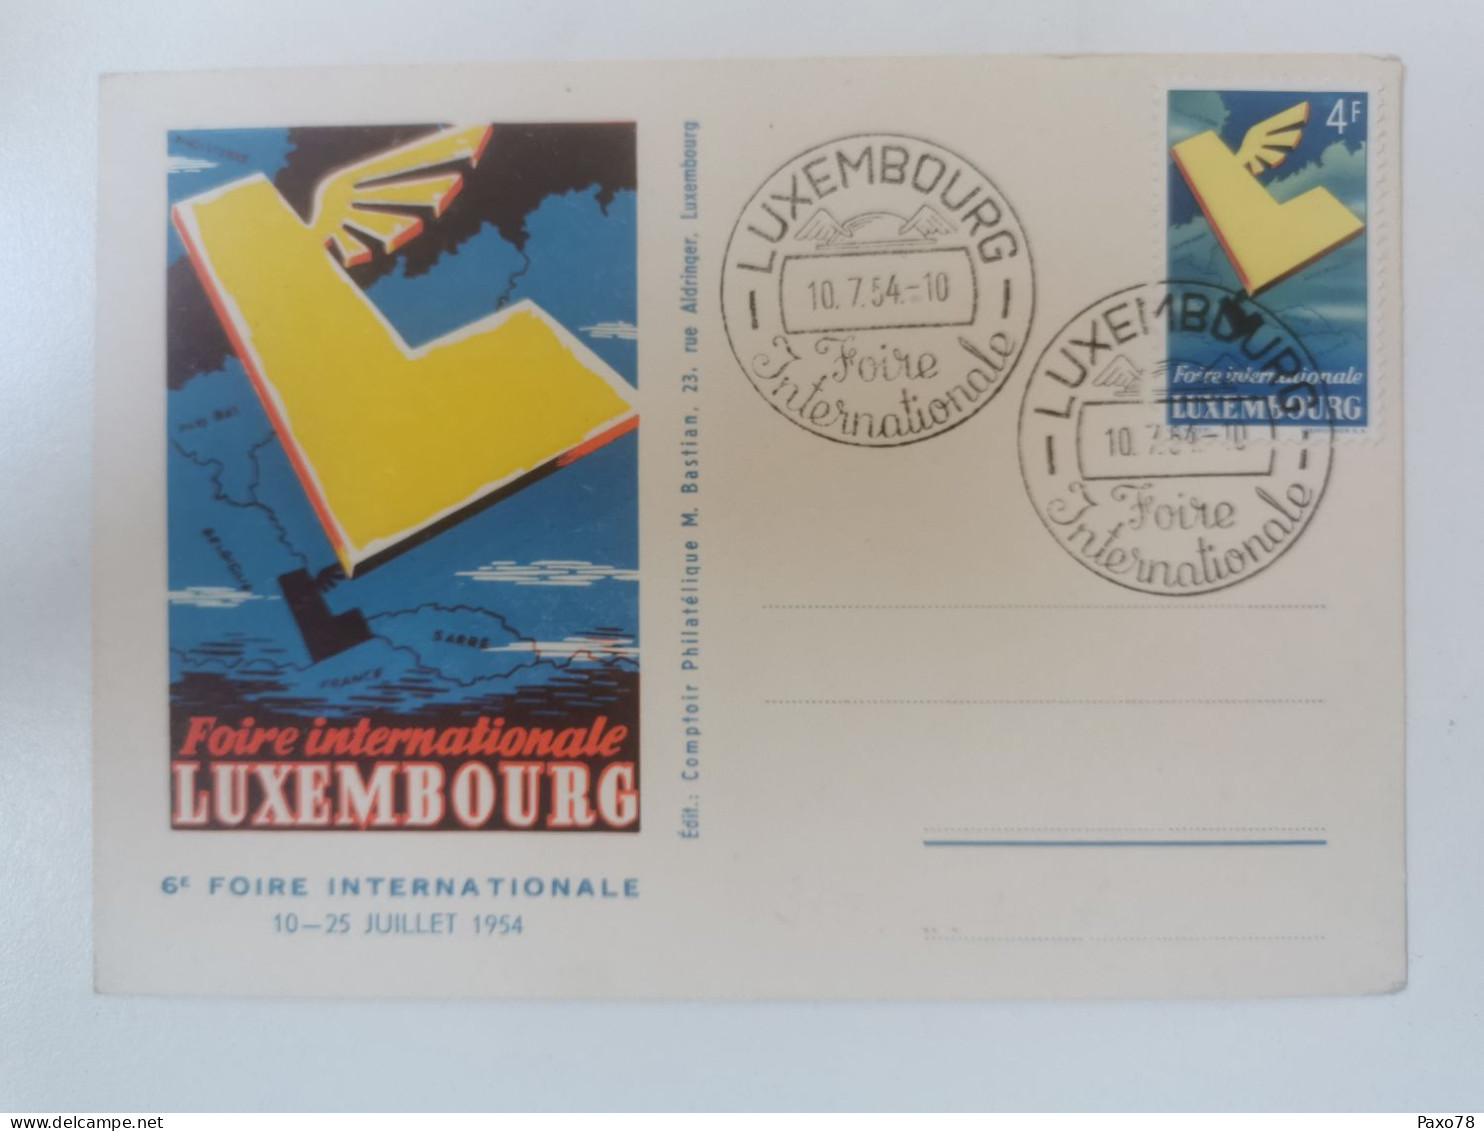 6ème Foire Internationale Luxembourg 1954 - Cartes Commémoratives